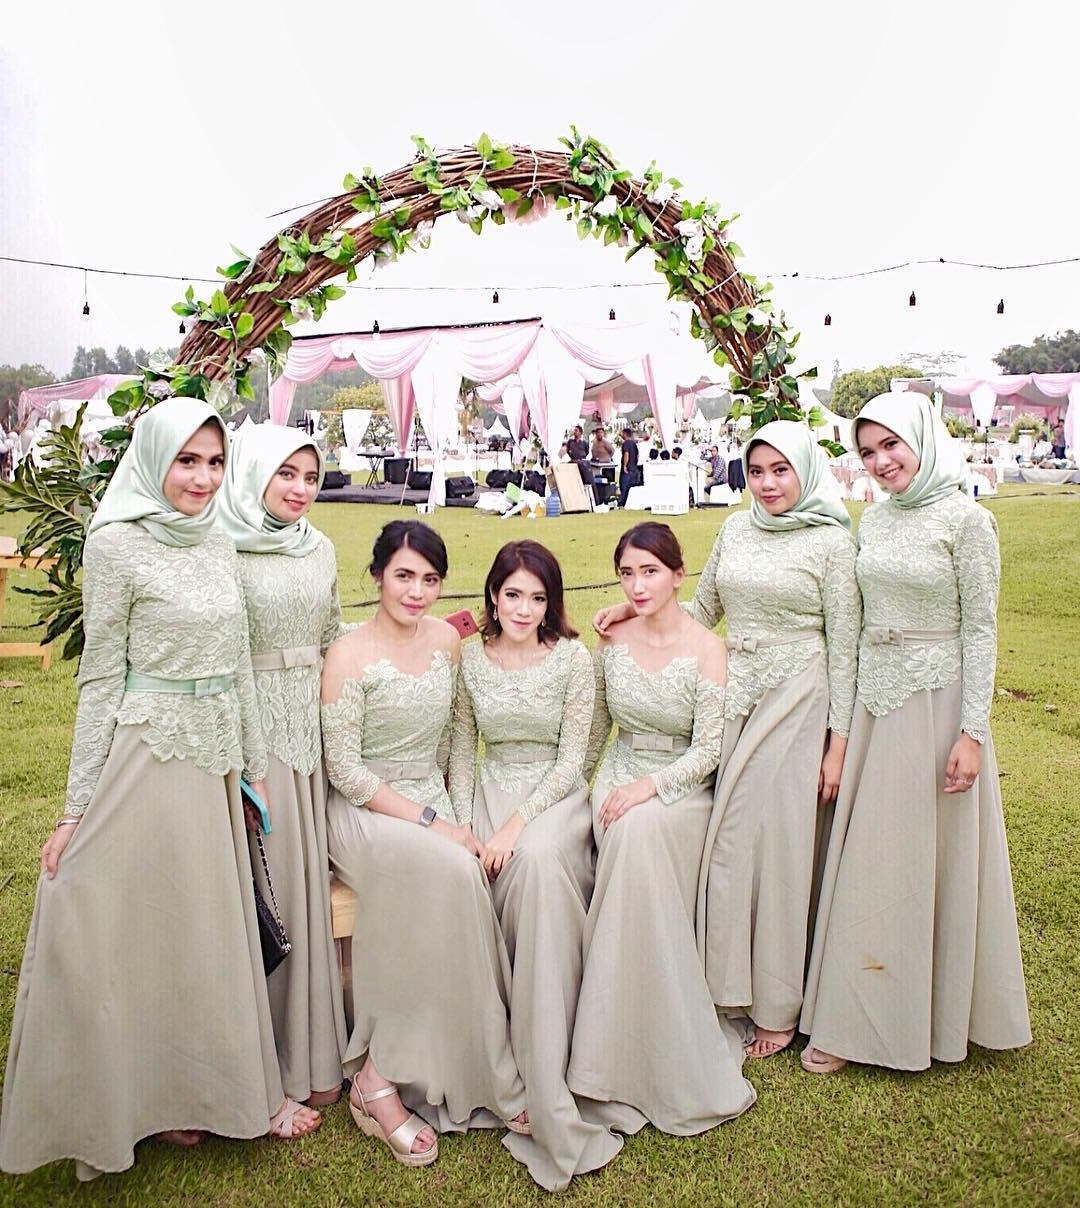 Bentuk Gamis Untuk Seragam Pernikahan 0gdr Pin Oleh Nurul Hikmah Lidiany Di Fashion